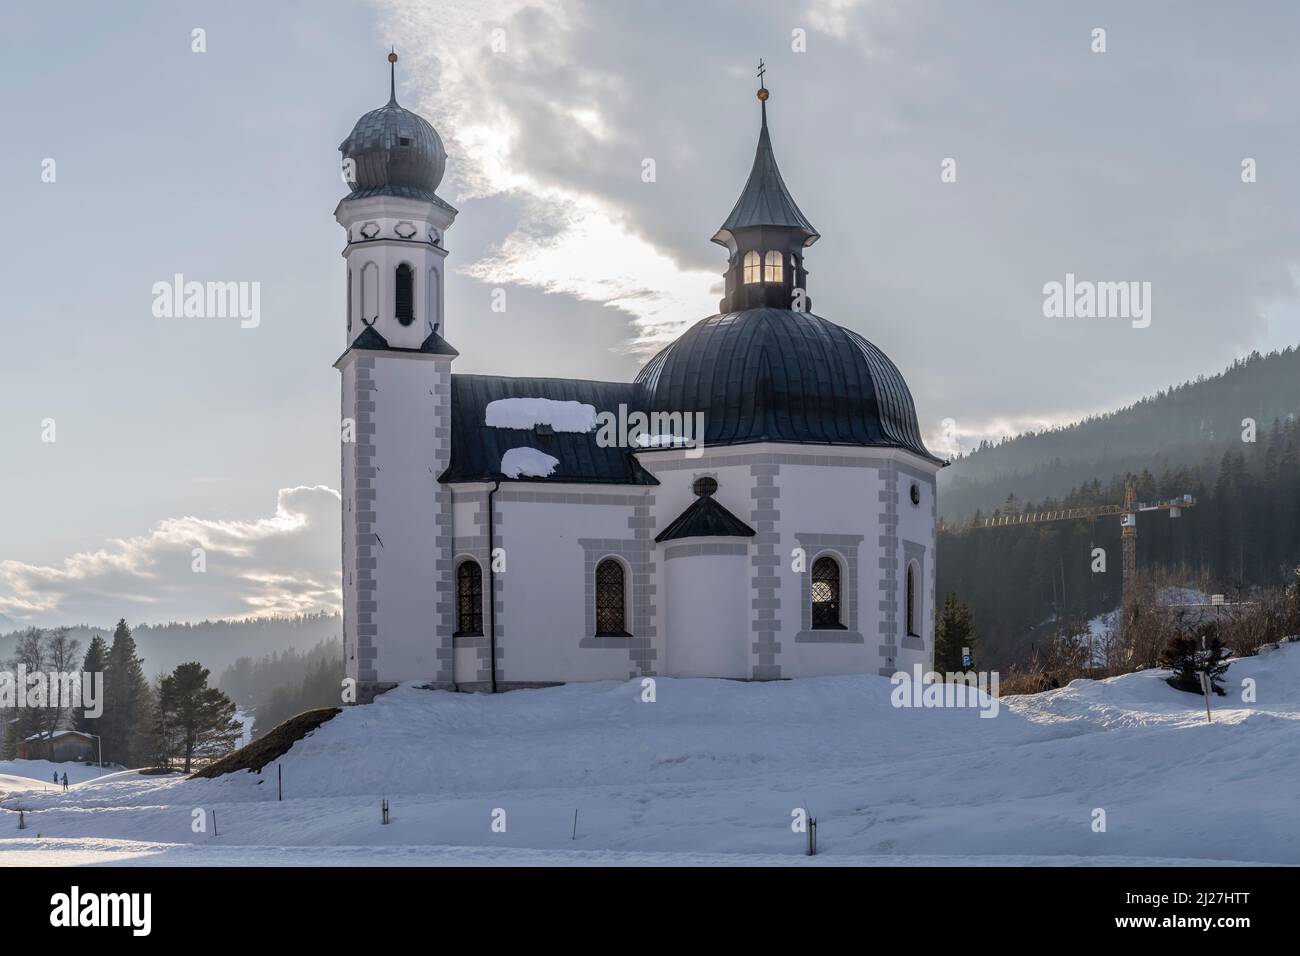 Stadtbild mit pittoresker barocker Seekirchl-Kirche auf schneebedecktem Boden in touristischer Volllage, aufgenommen im hellen Winterlicht bei Seefeld, Tirol Stockfoto